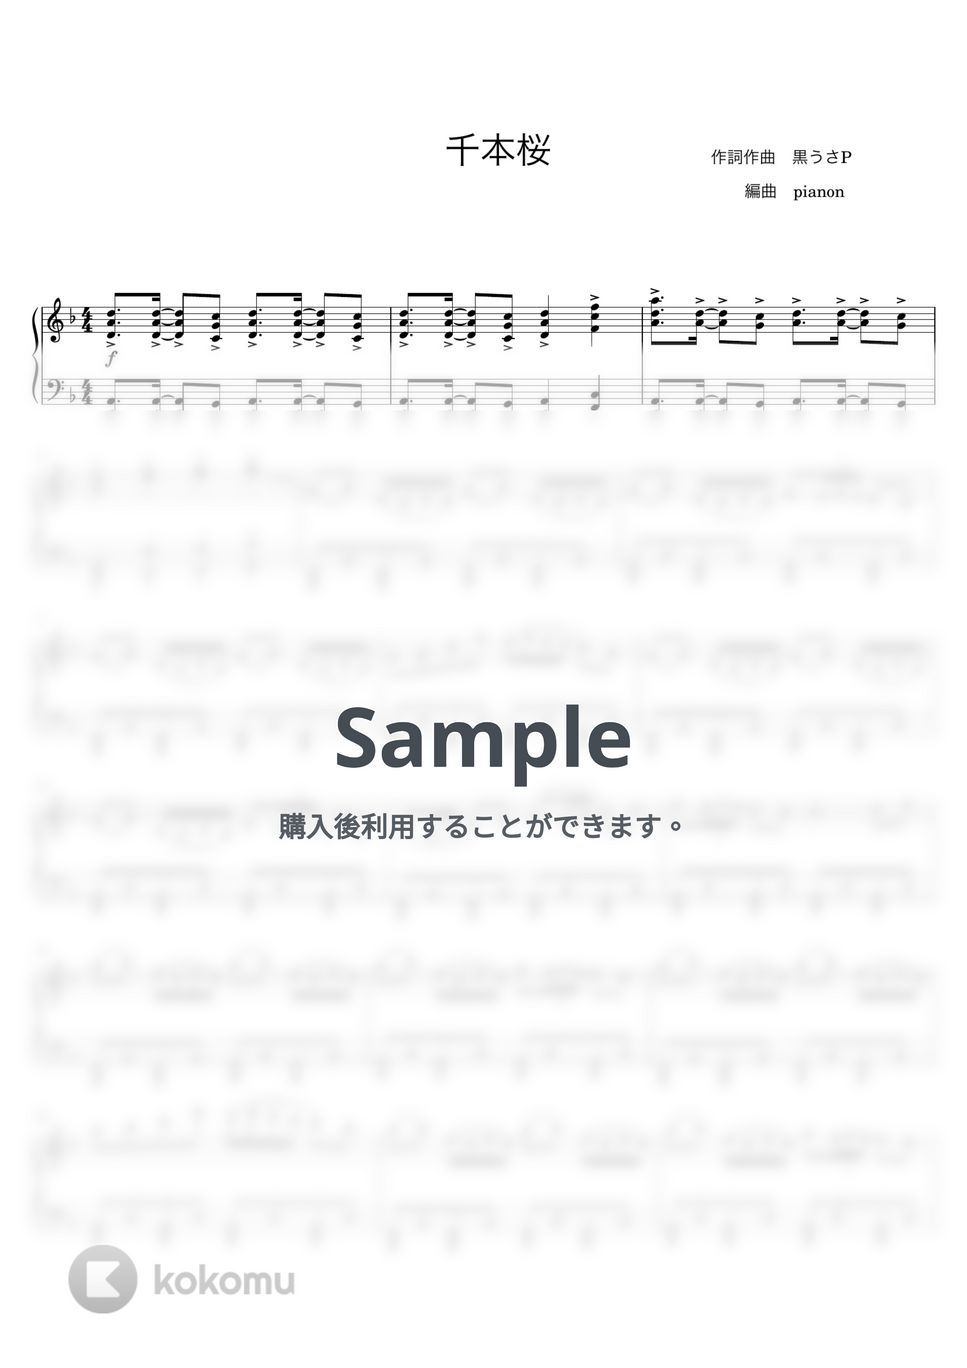 黒うさP - 千本桜 (ピアノソロ上級〜プロ) by pianon